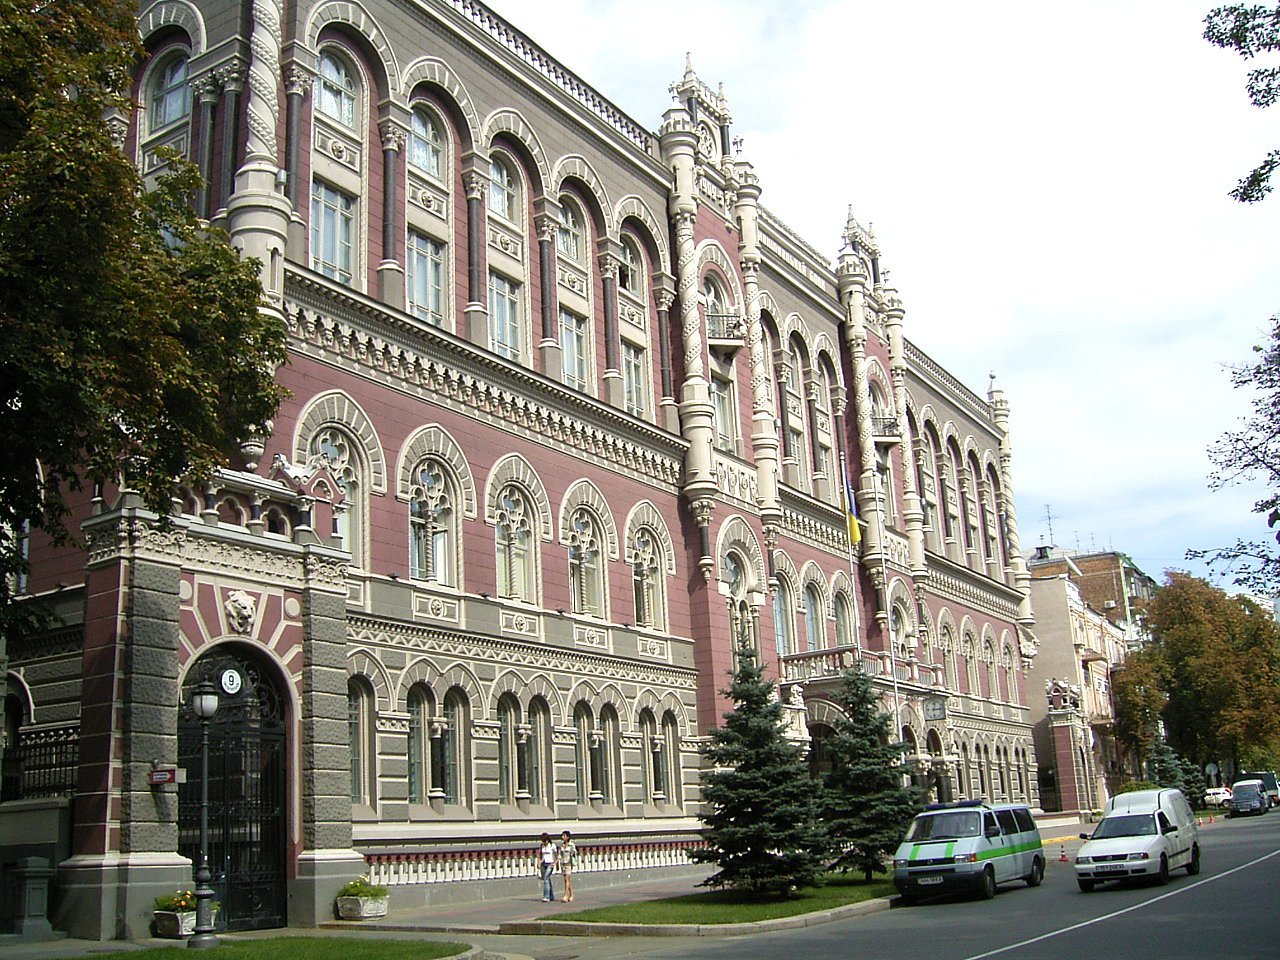 ЦБ Украины. National Bank of Ukraine. Здание национального банка Украины. Национальная библиотека Украины. Нацбанк украины